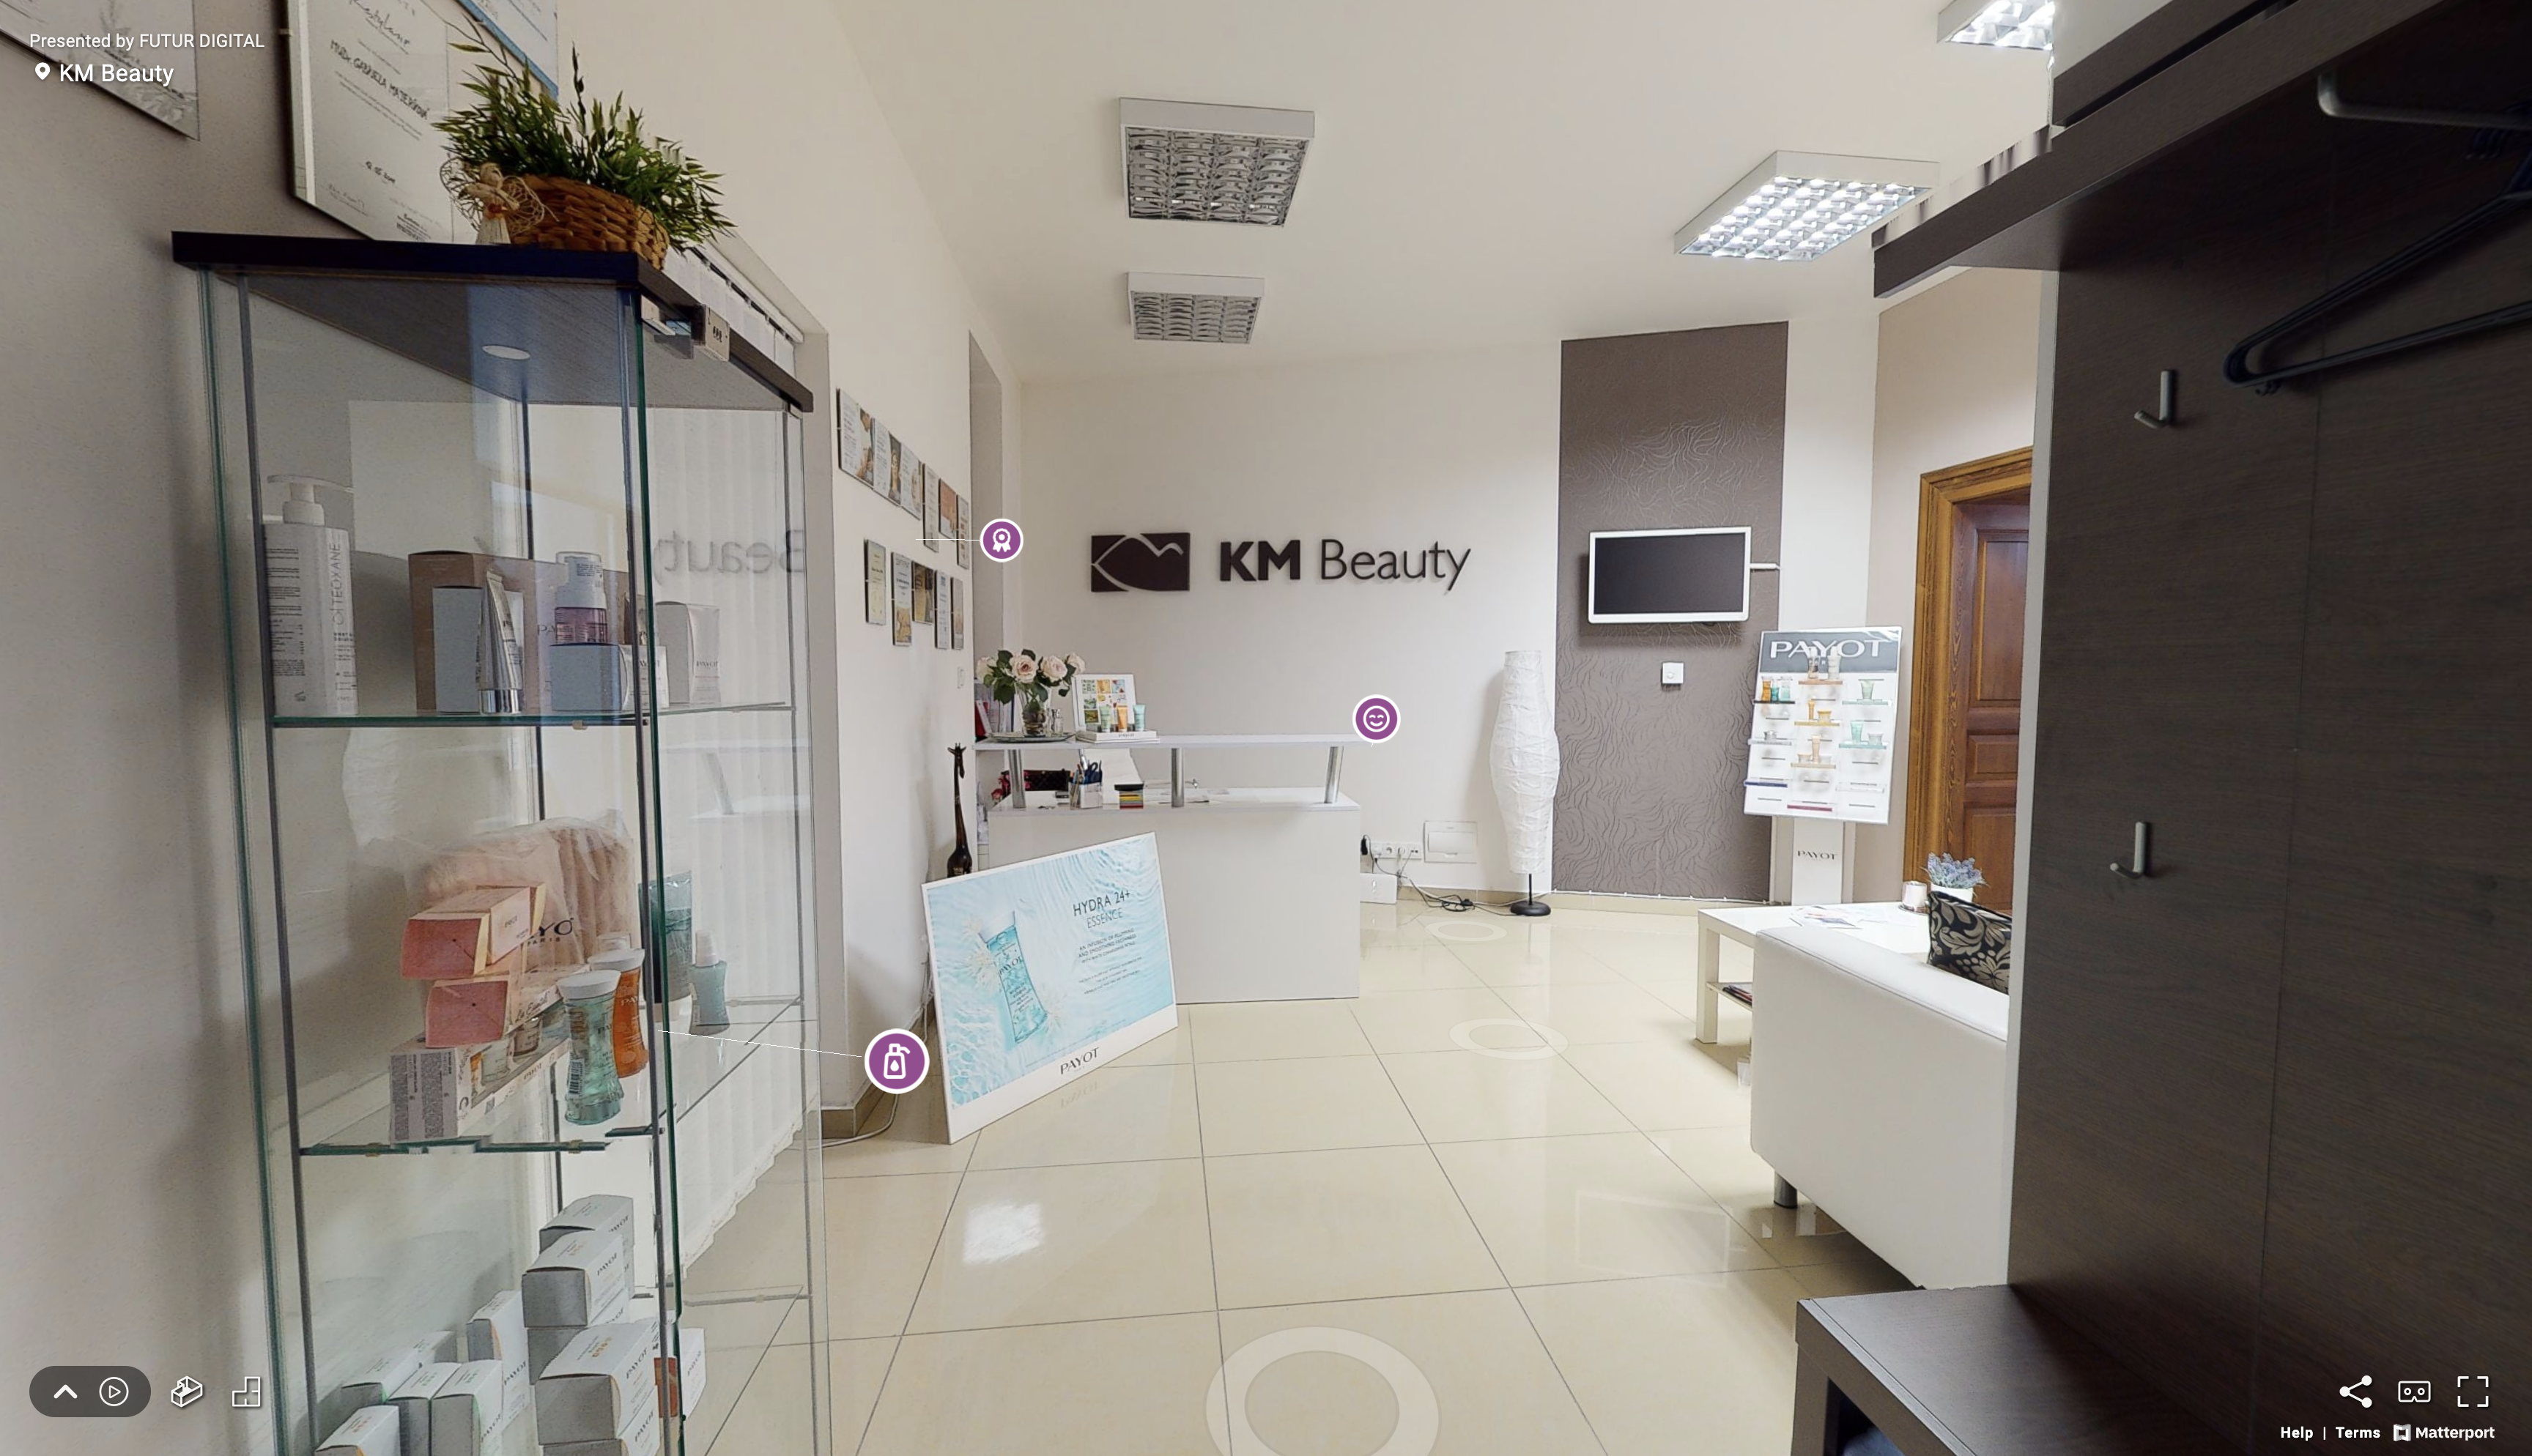 Pohľad na virtuálnu prehliadku kozmetického salóna KM Beauty s pohľadom na vstupnú halu s recepciou, vitrínou s produktami značky Payot a sedacou súpravou.